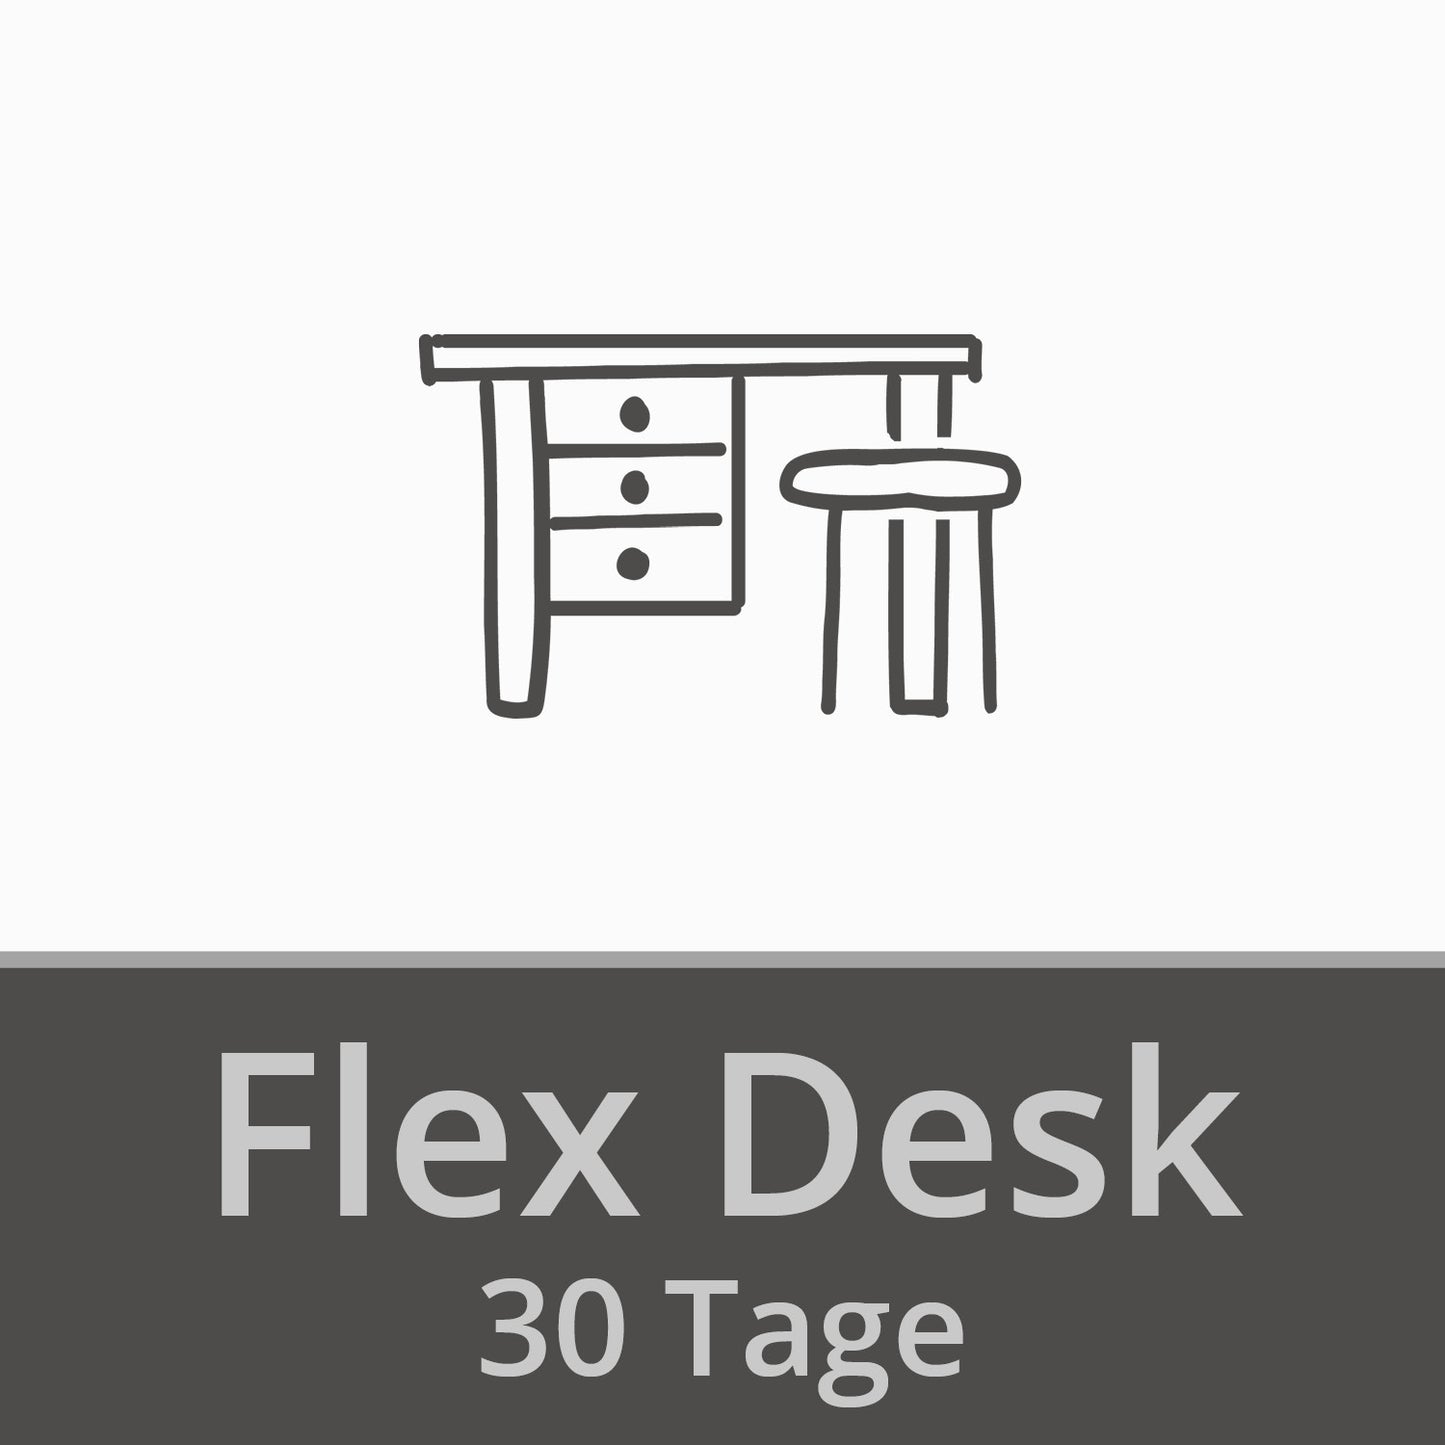 FLEX DESK 30 Tage | 6 Monate einlösbar